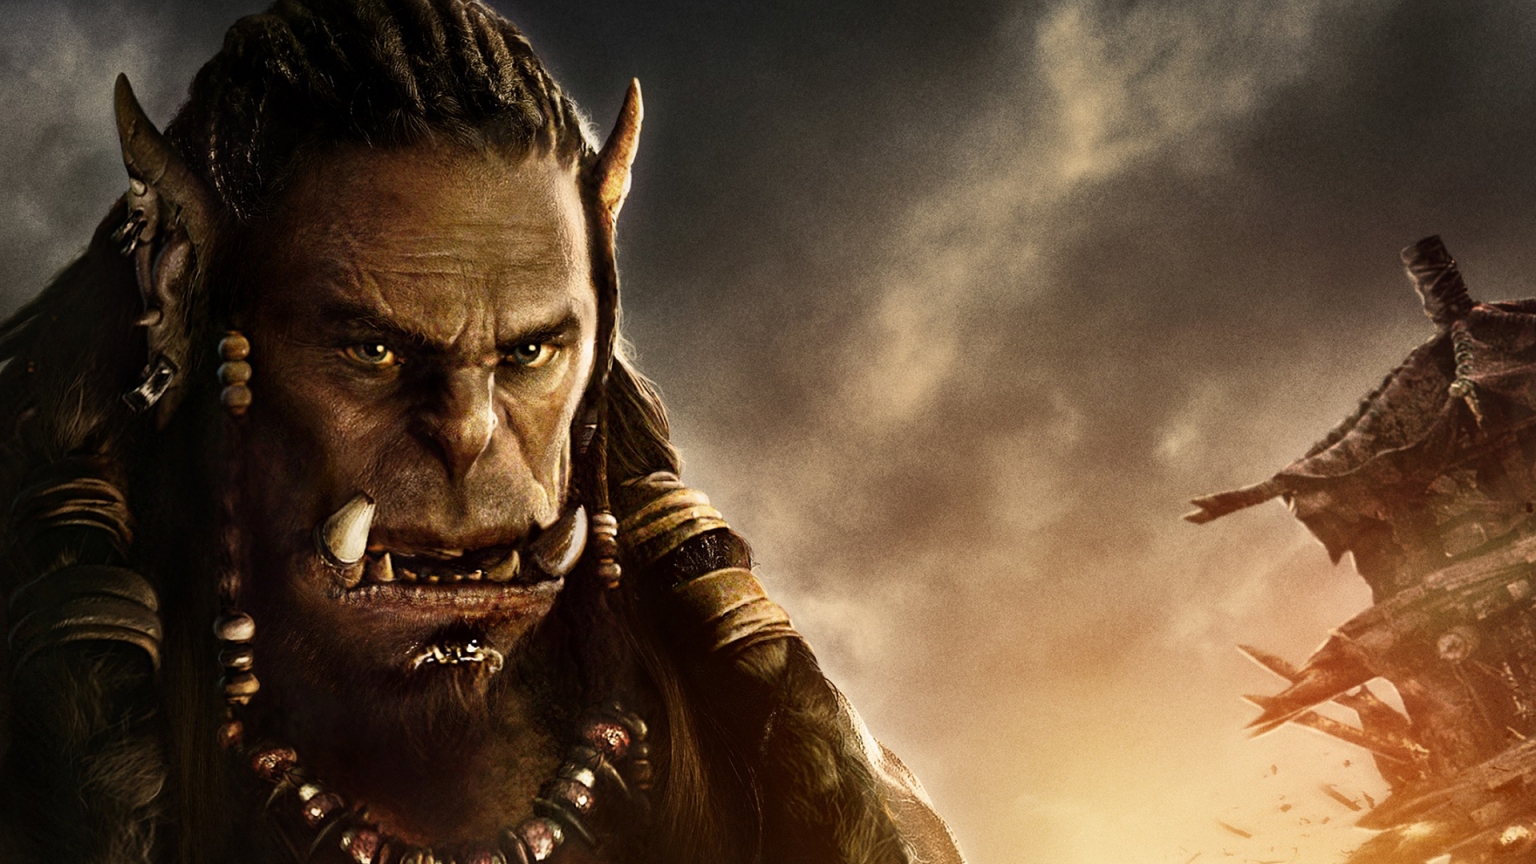 Warcraft Movie 2016 Durotan for 1536 x 864 HDTV resolution